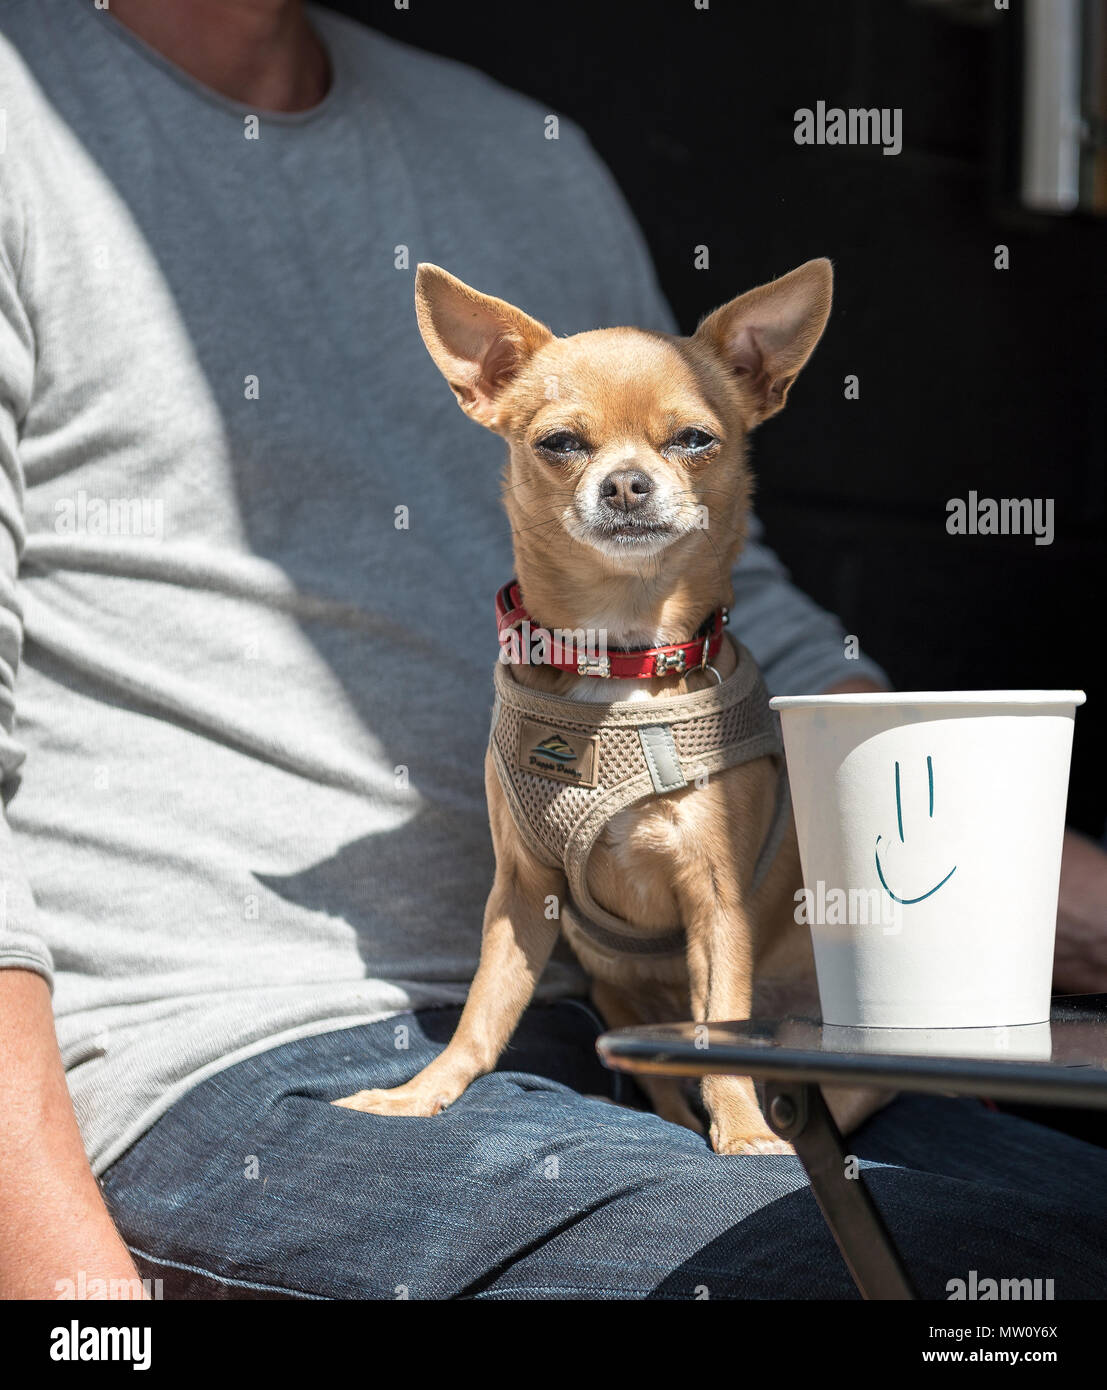 Divertida escena de café con perro en el regazo de los propietarios con mensaje personalizado en la taza de café Foto de stock